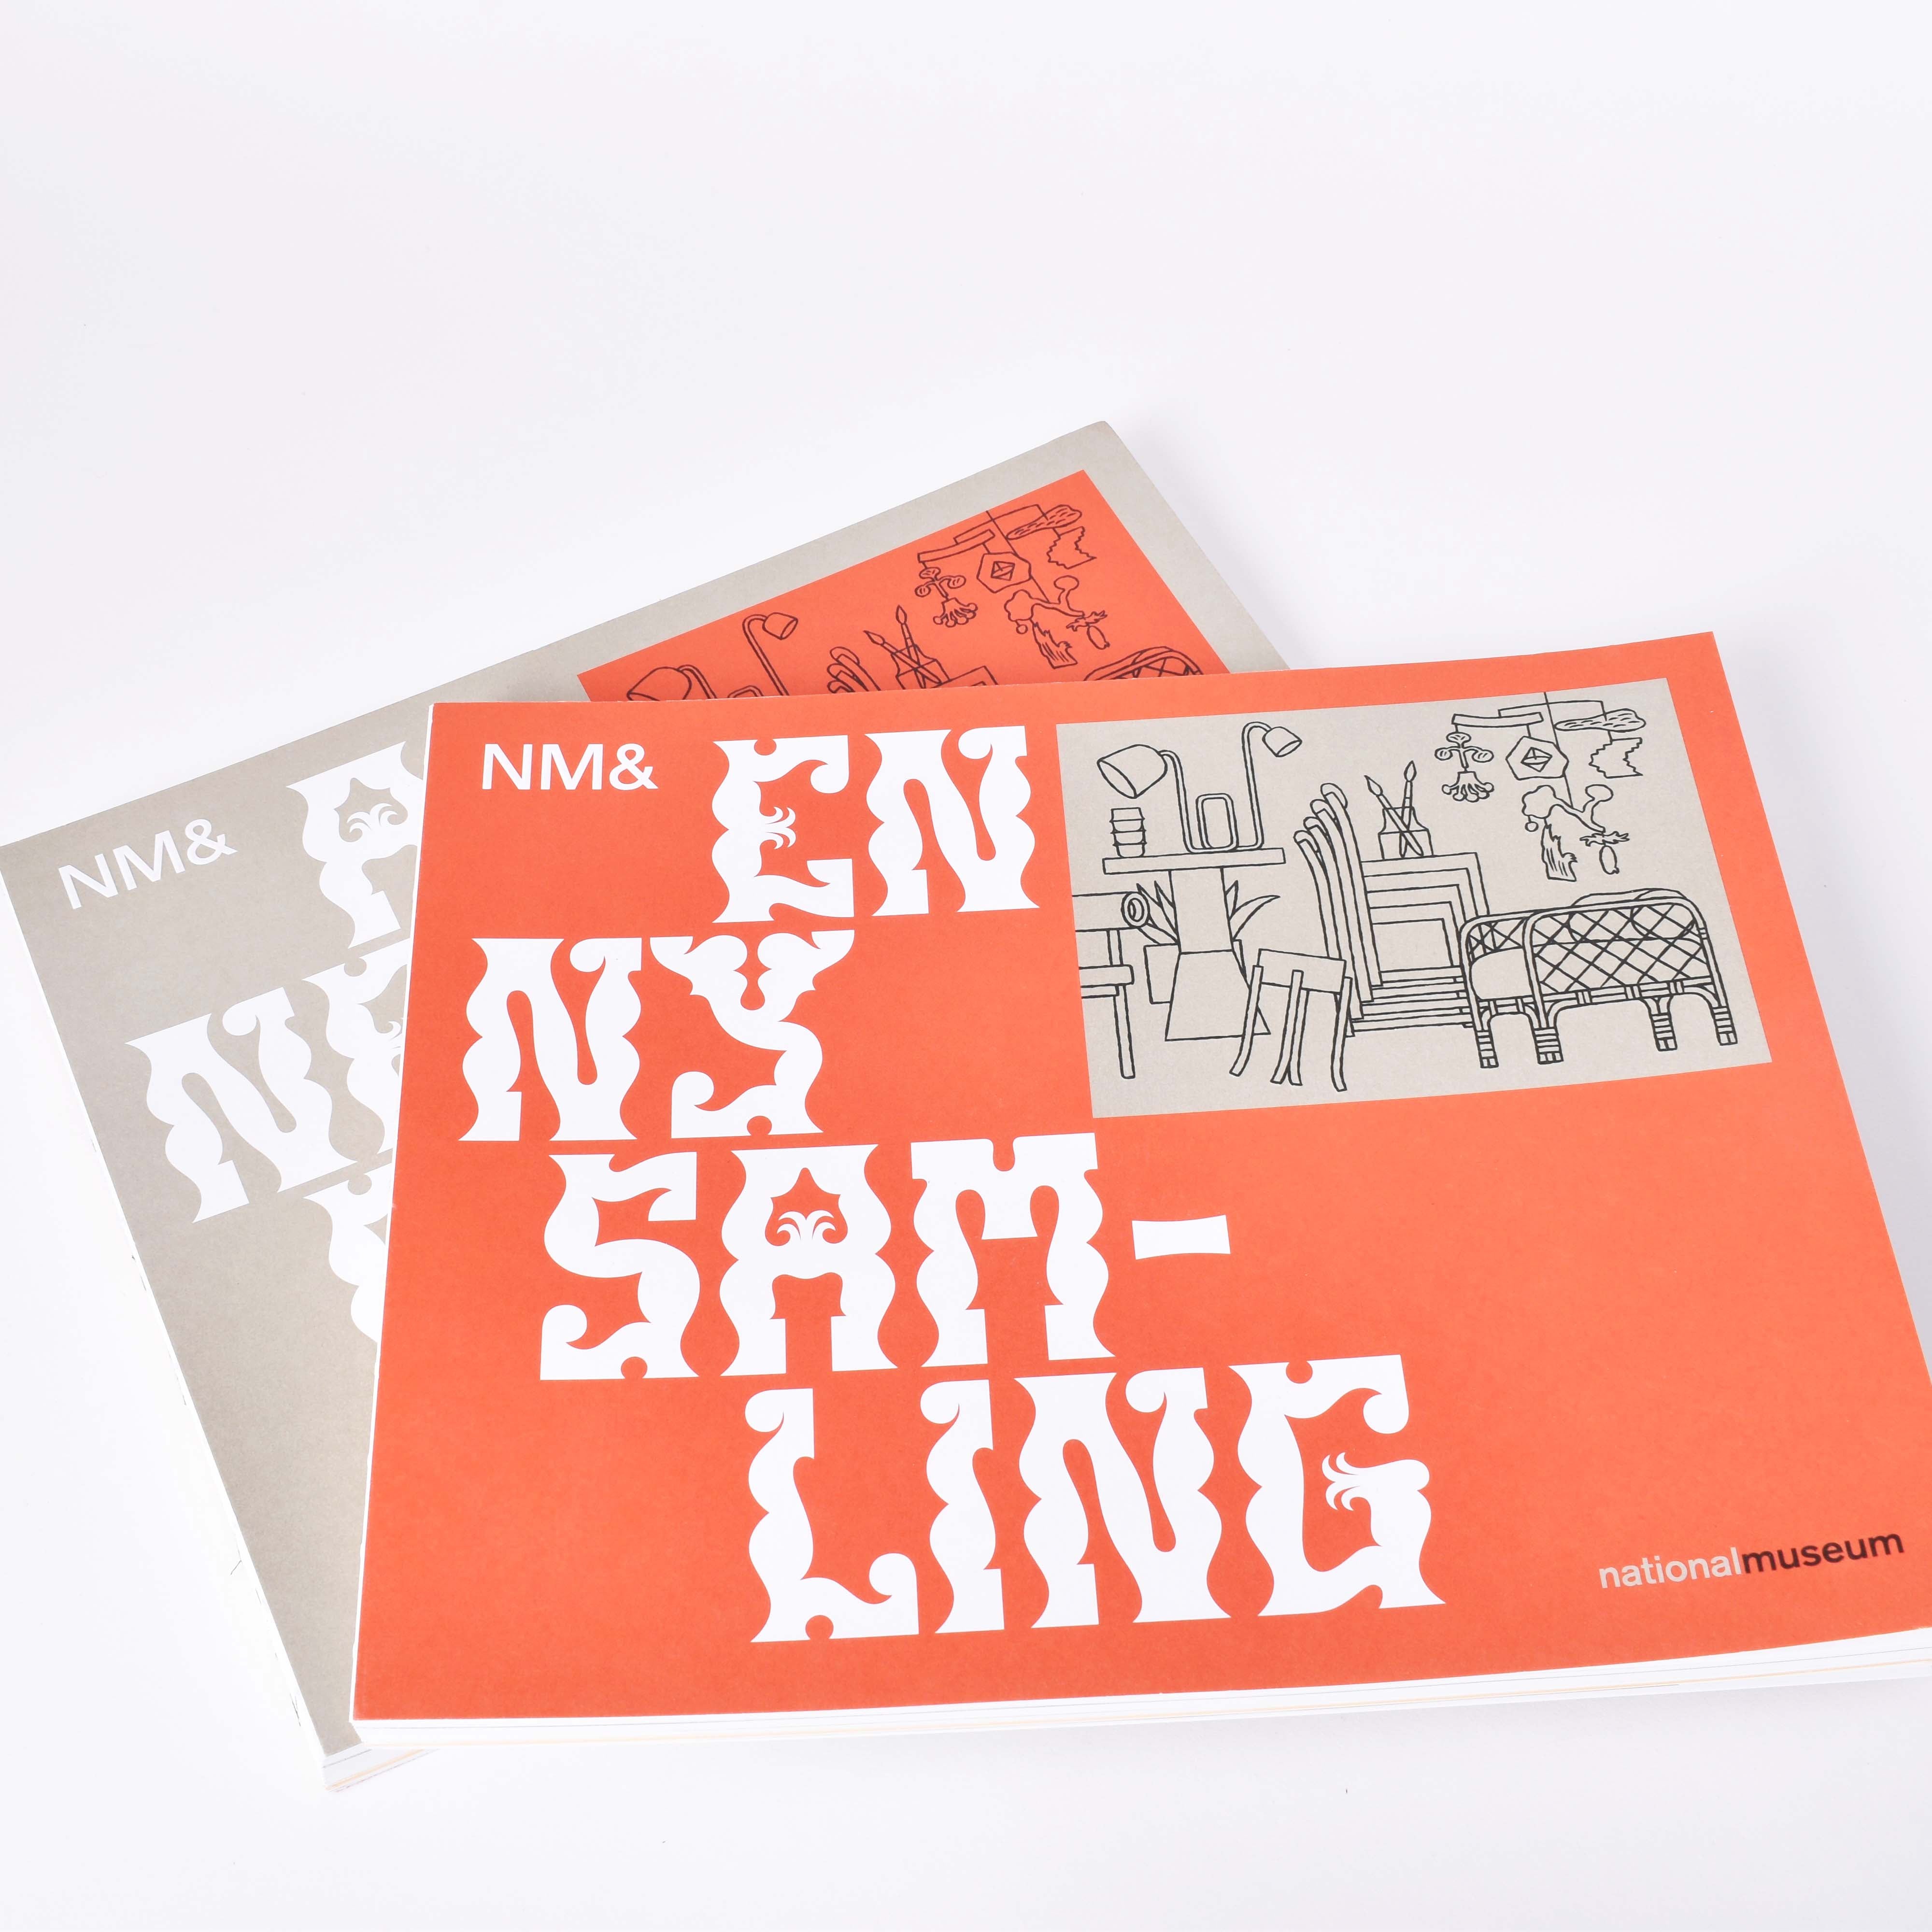 Två exemplar av "En ny samling". Den svenska versionen har en röd framsida, och den engelska har en grå framsida